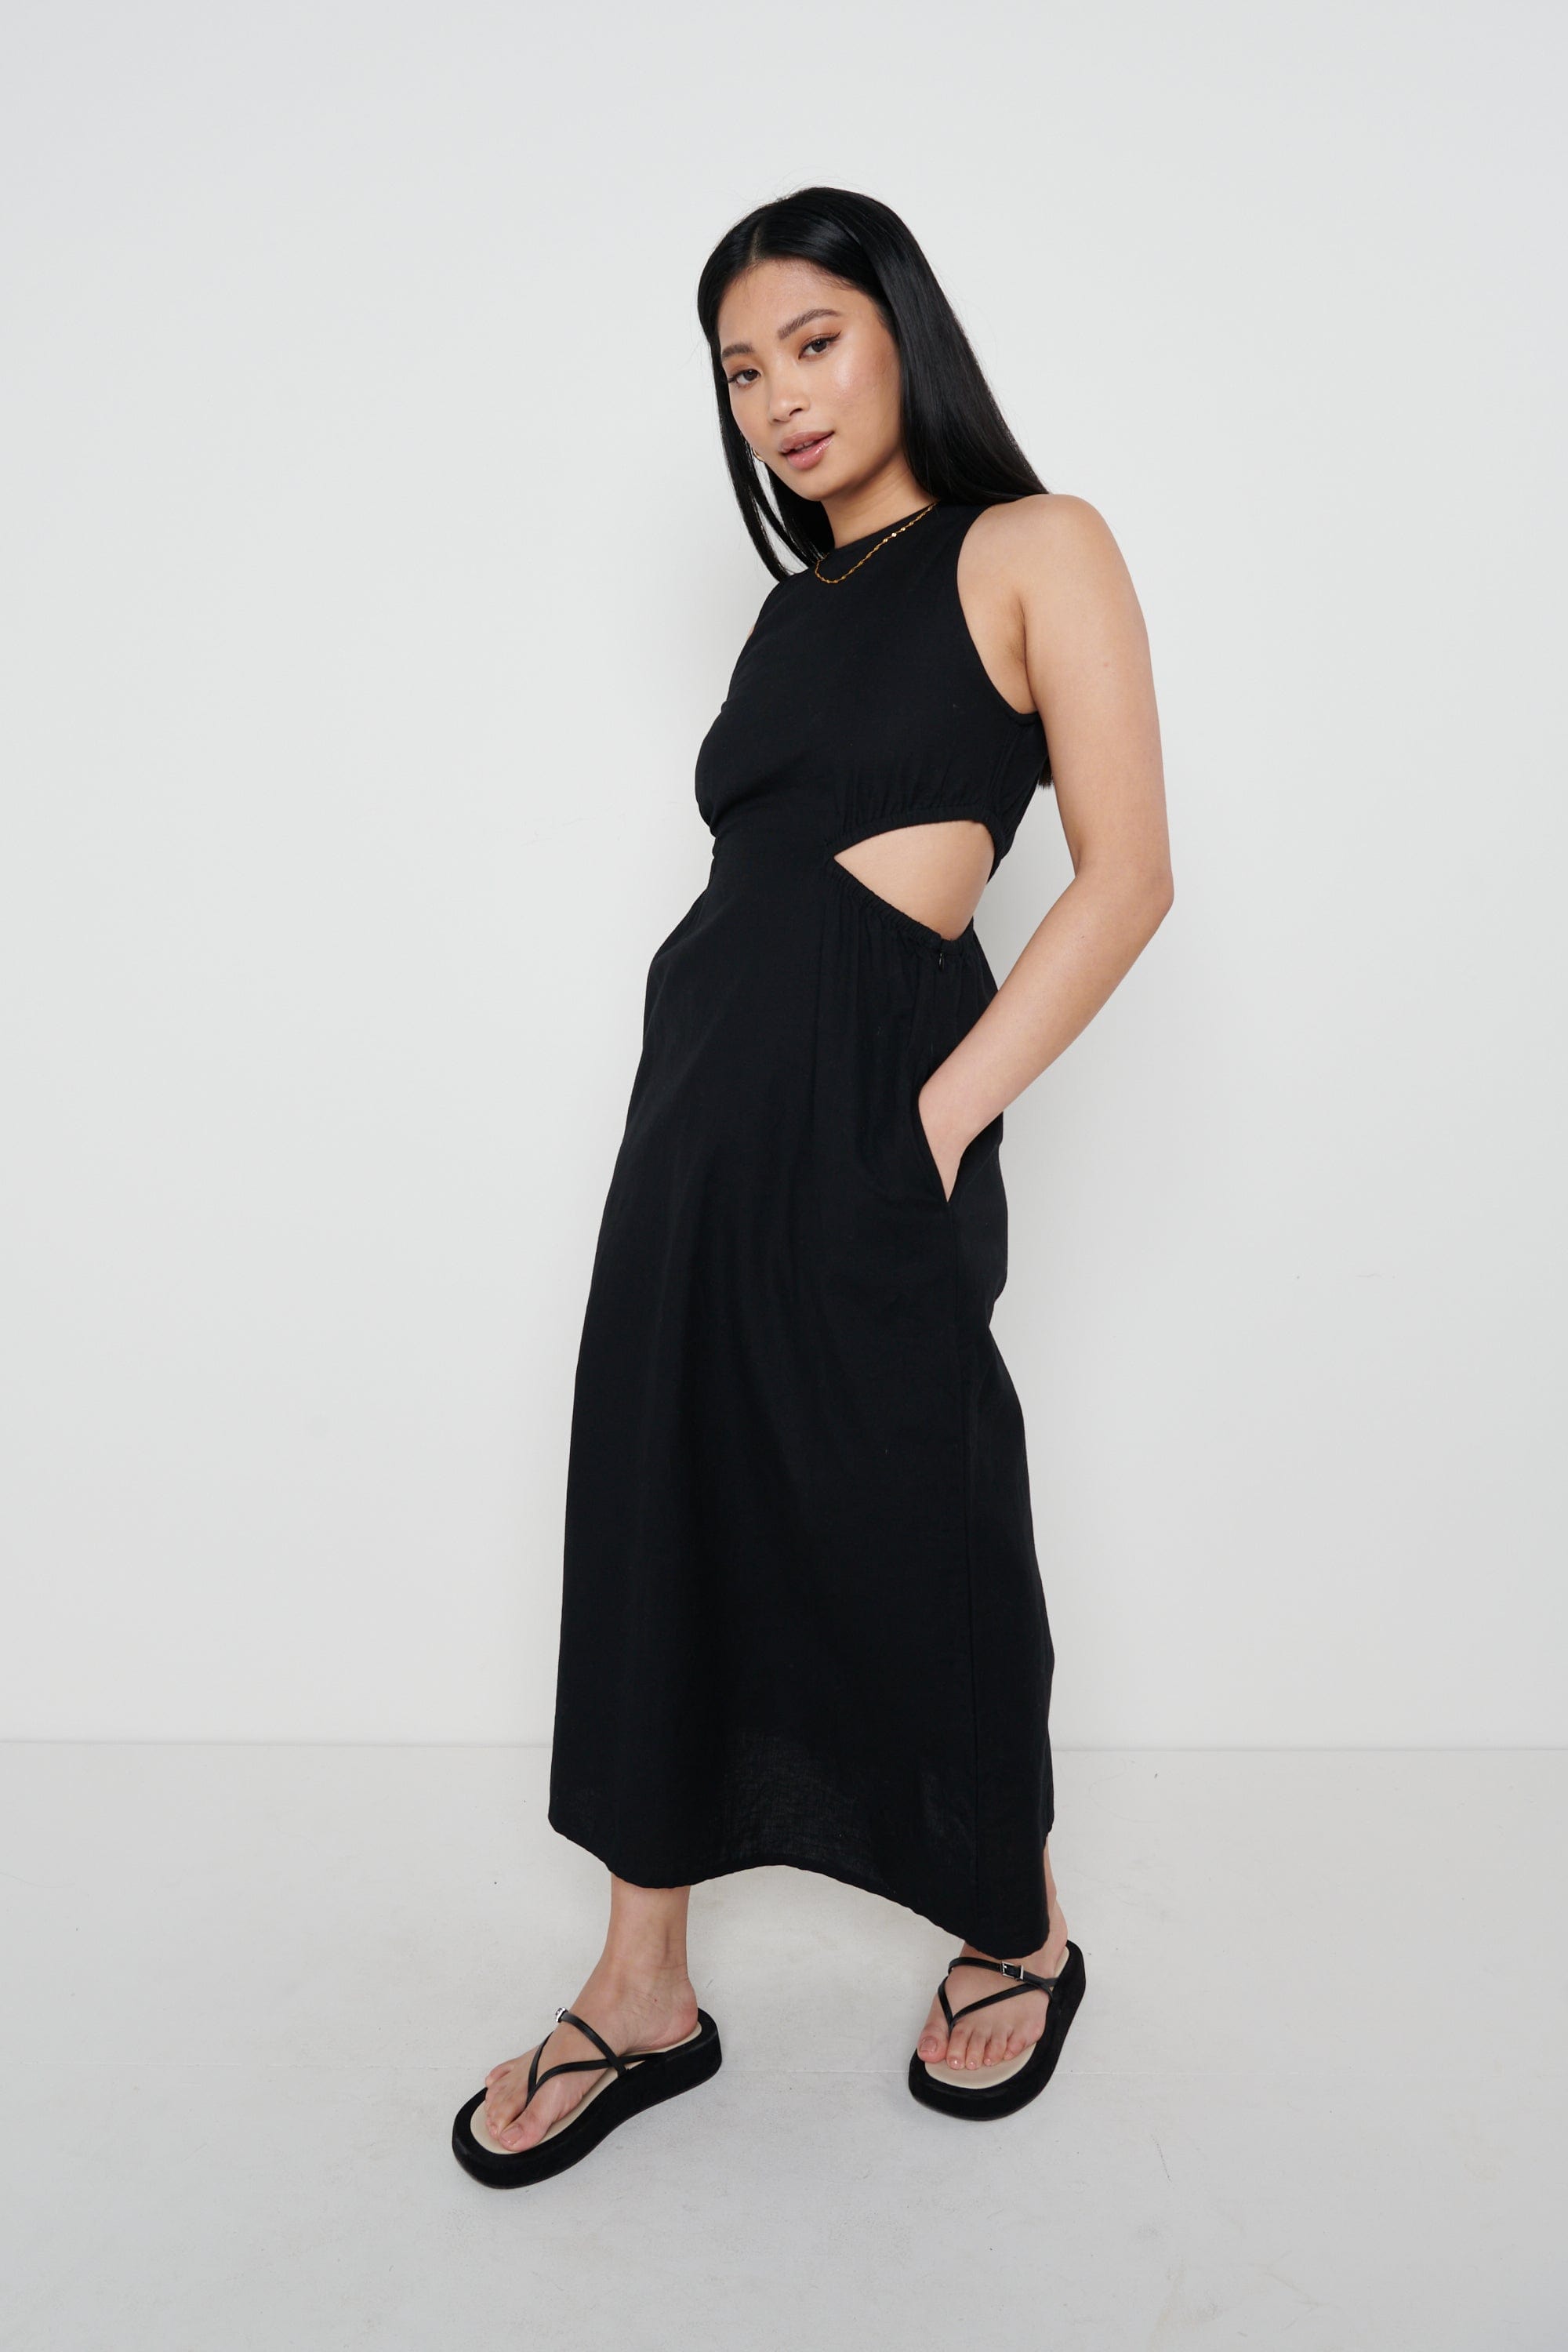 Pascale Cut Out Midaxi Dress - Black, 8